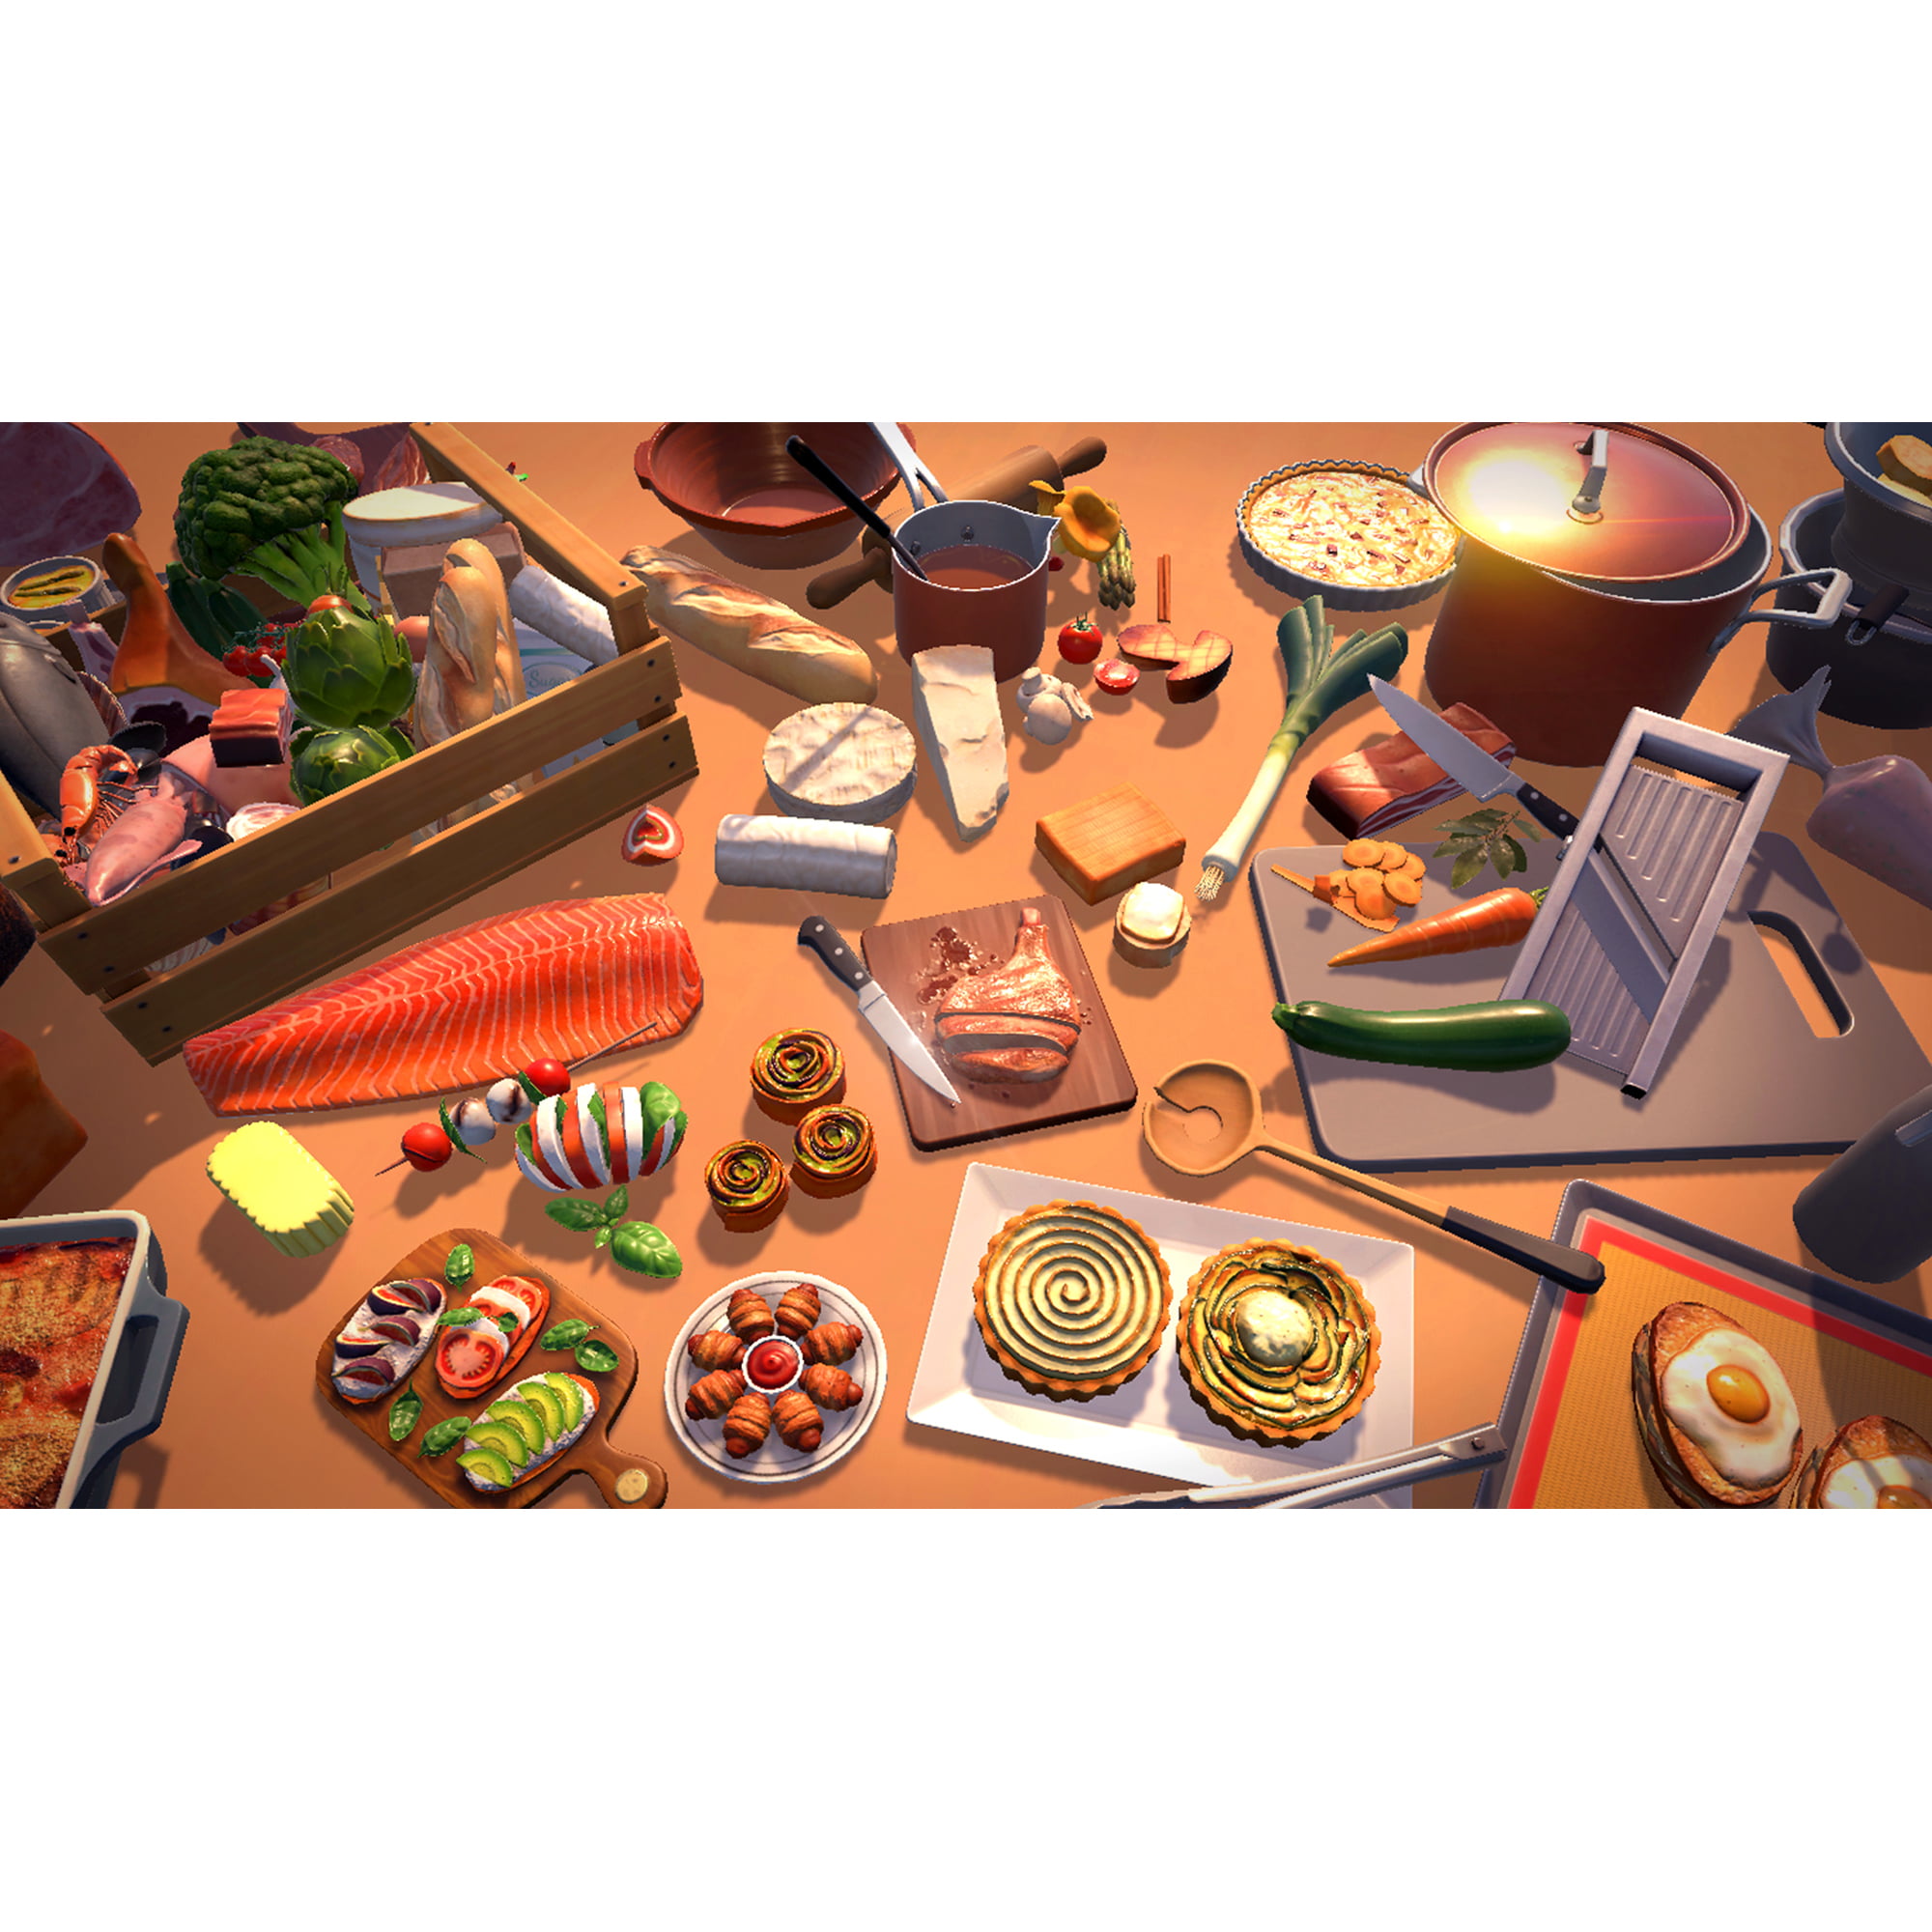 Jogo Chef Life: Restaurant Simulator Al Forno Edition - Playstation 4 em  Promoção na Americanas